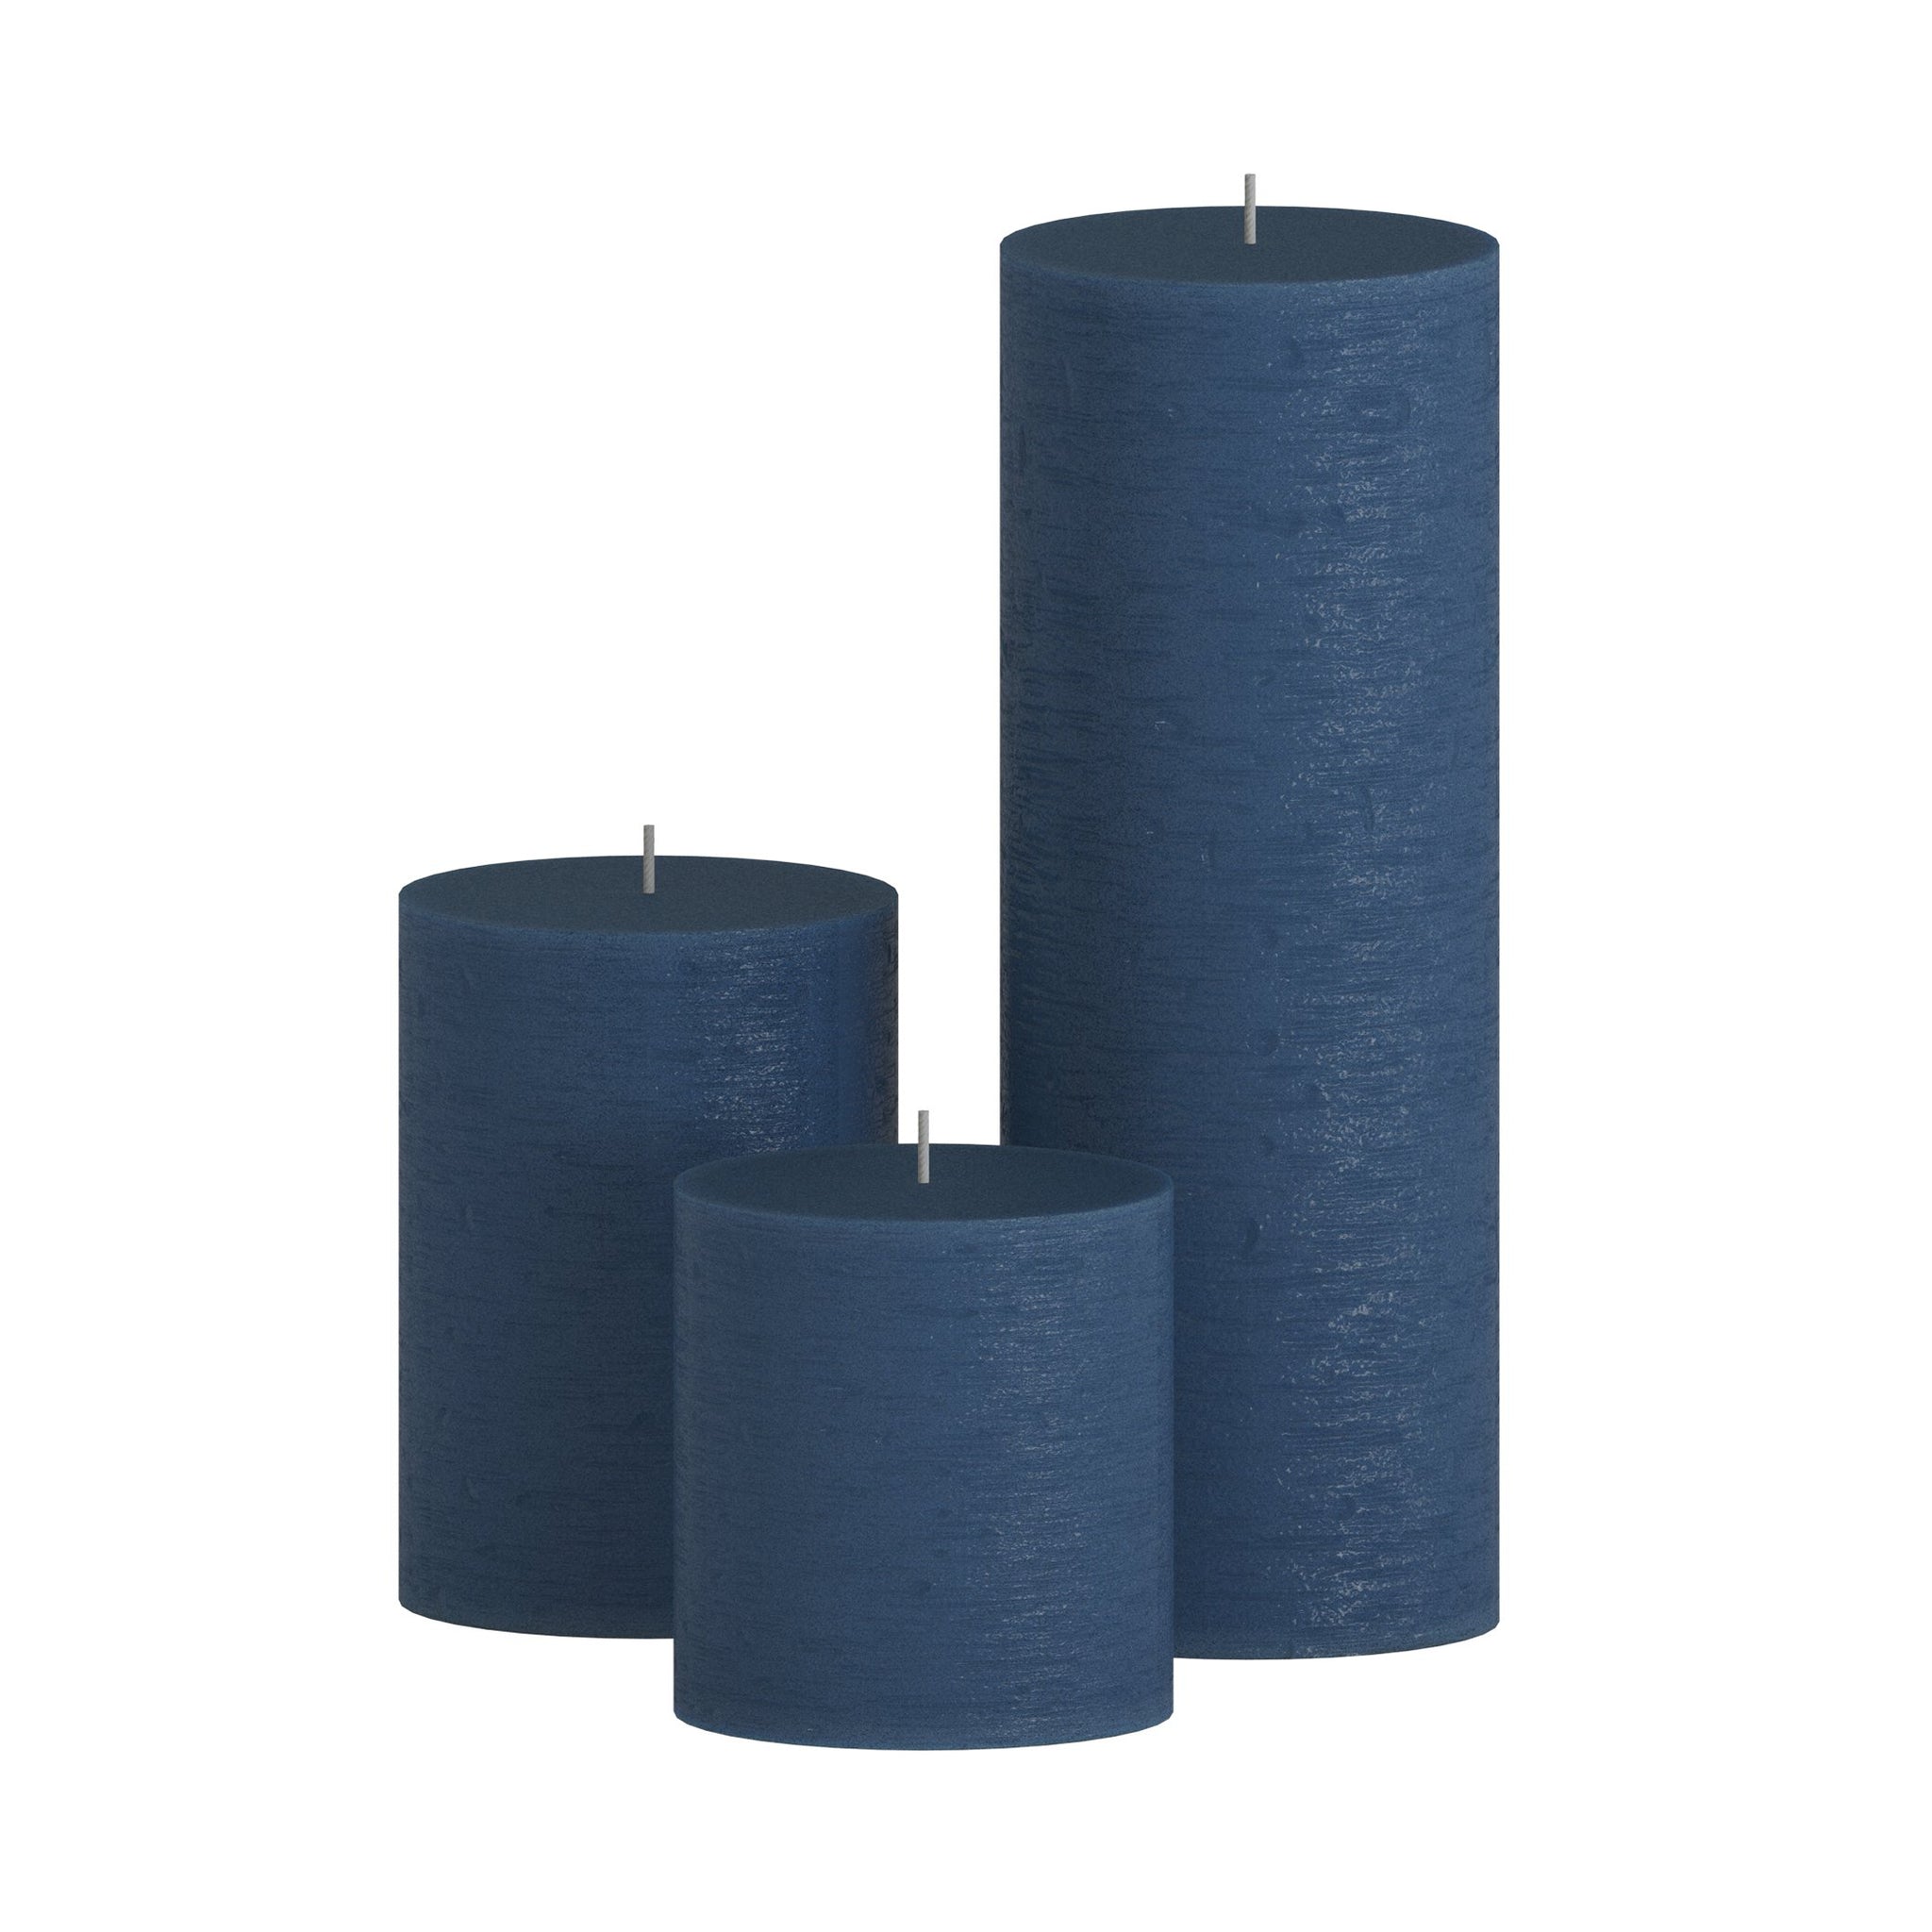 CANDWAX Dark Blue Pillar Mix - 3 inch, 4 inch & 8 inch